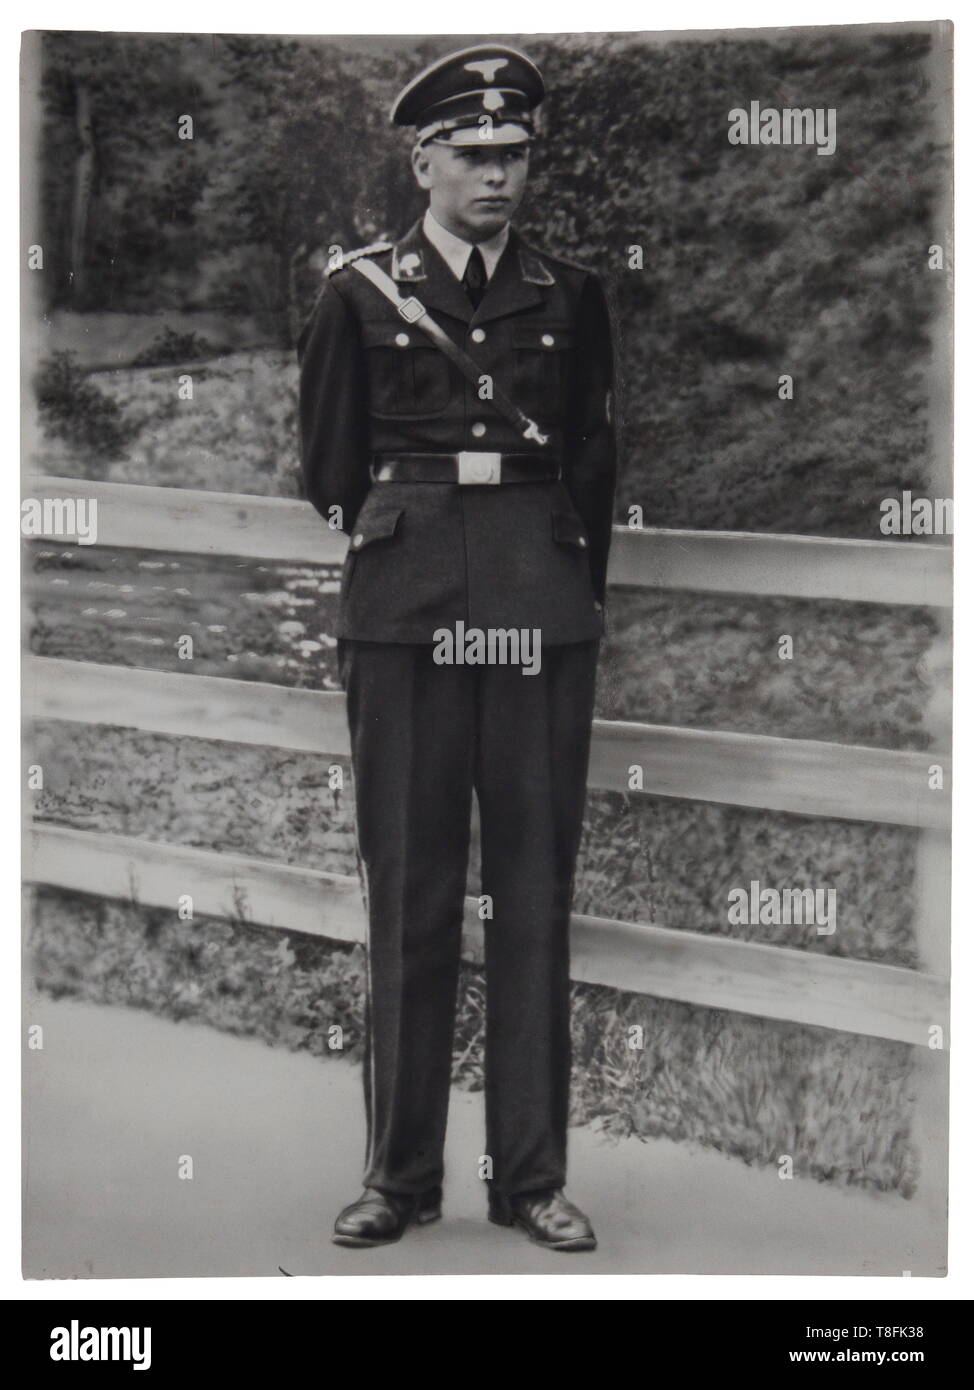 Una SS anello d'onore SS-Rottenführer Eduard Gärtner membro della SS Totenkopf-divisione. Anello in argento realizzato da Gahr a Monaco di Baviera, saldato al di sotto applicata separatamente la morte di testa, all'interno della superficie incisa 'S.lb Gärtner 11.6.39 H. Himmler'. Peso 10,5 g, diametro interno 21,6 mm. In pelle nera scatola incernierate del periodo, rivestimento in oro. Foto di Gärtner in uniforme completa montata sul disco stock " 29 cm x 39 cm", foto della sua tomba. Viene fornito con Don Boyle certificato. USA-Los storica, storica del xx secolo, 1930S, 1940s, Waffen-SS Divisione armati delle SS, servizio armato, servizi armati, NS, Nat, Editorial-Use-solo Foto Stock